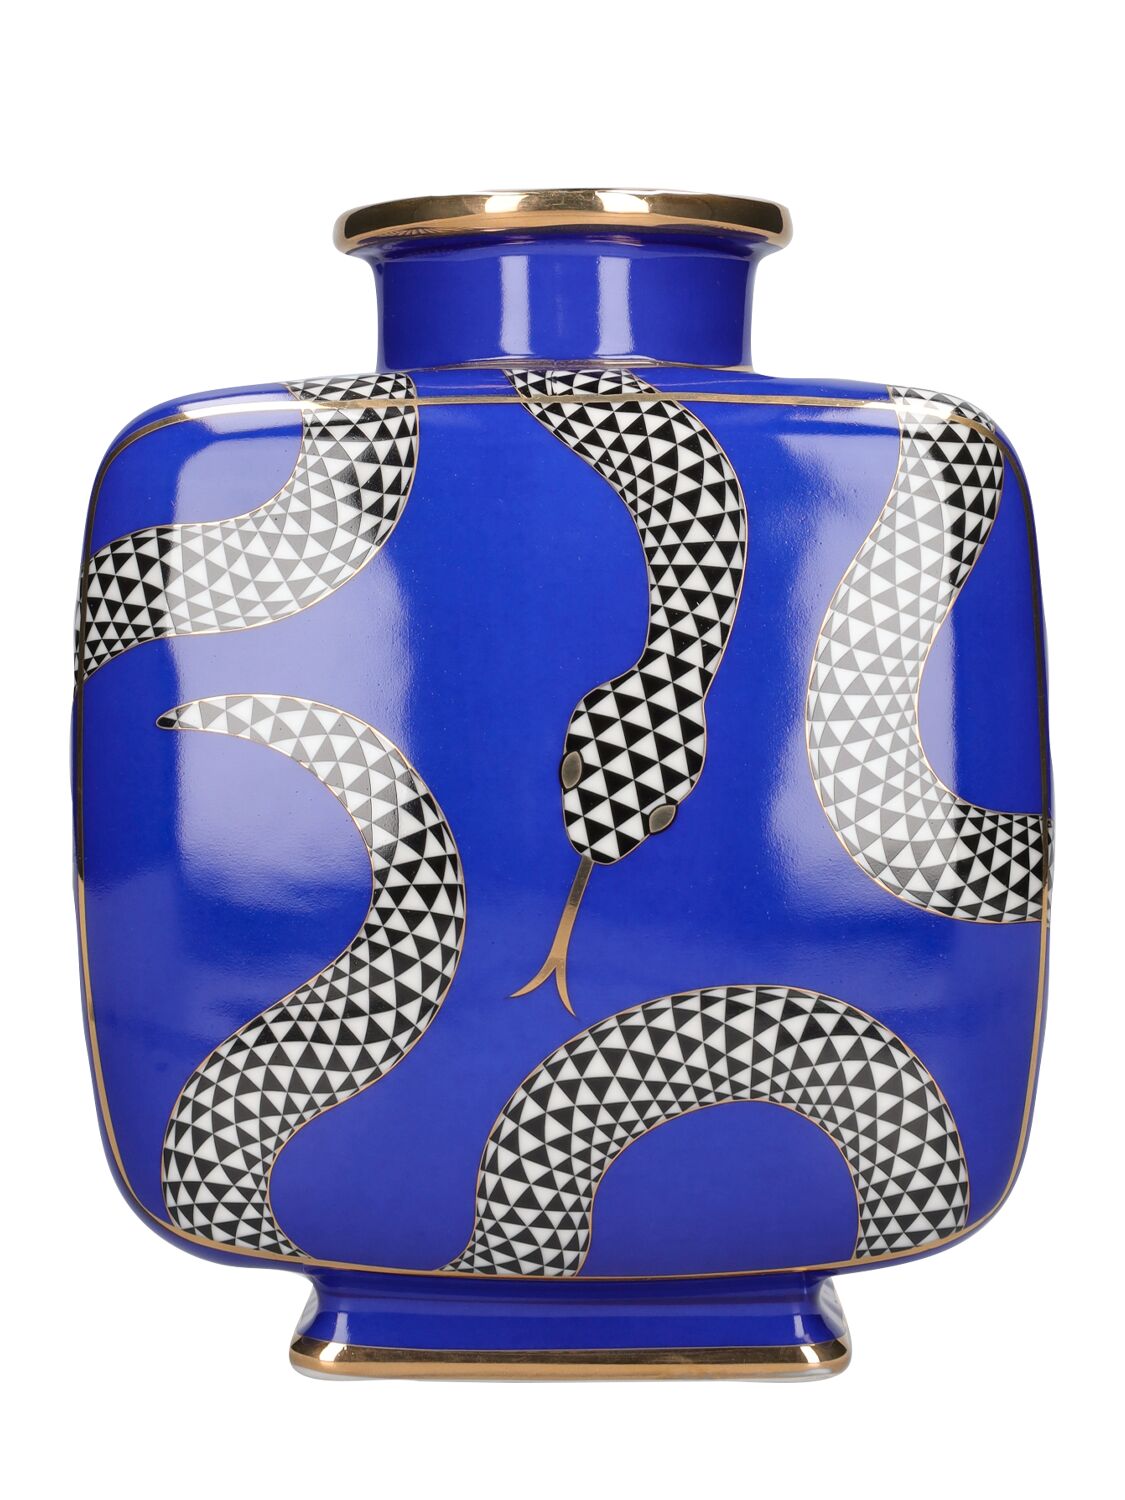 Jonathan Adler Eden Square Porcelain Vase In Blue